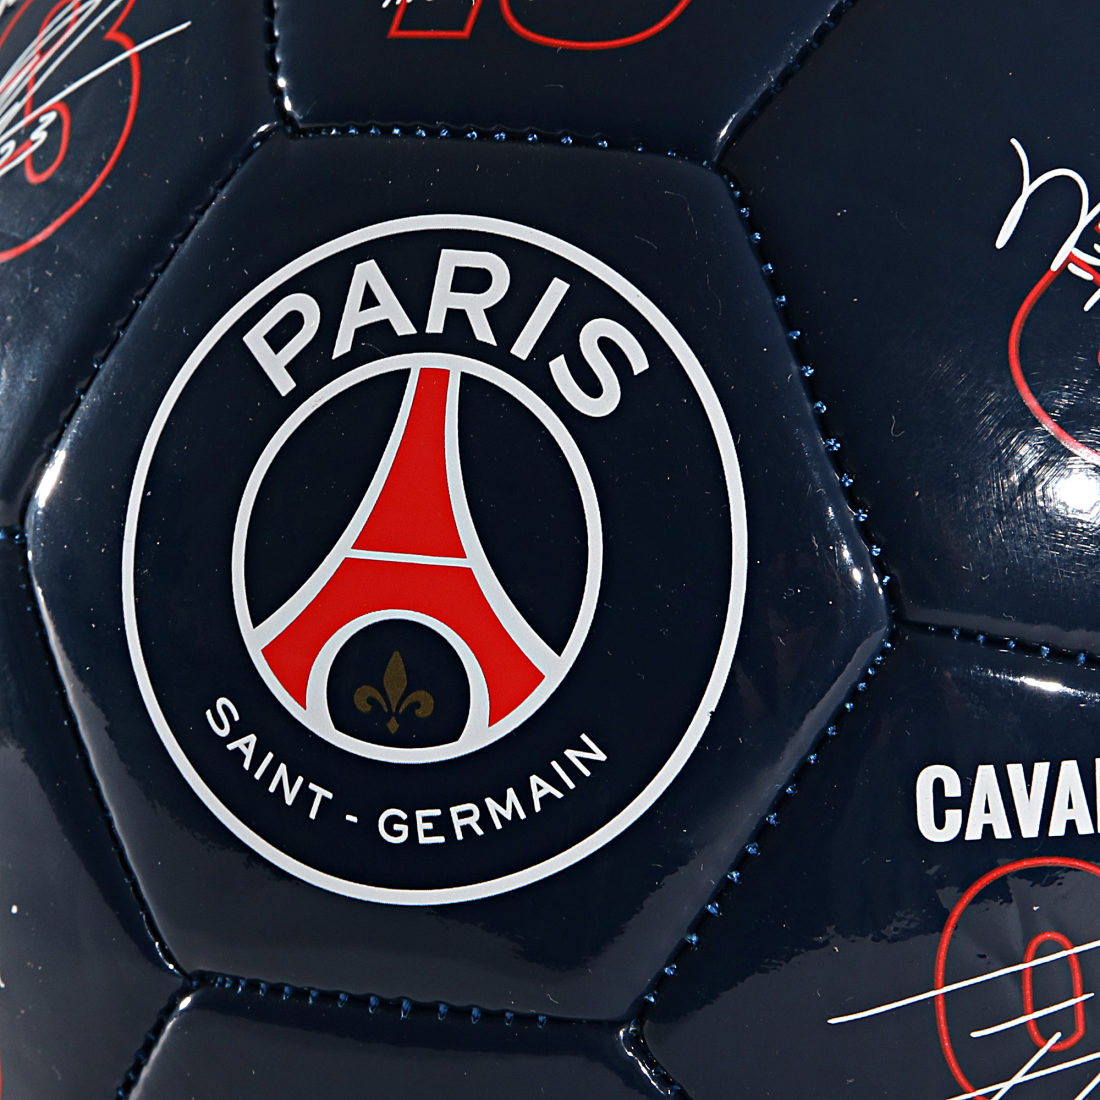 Ballon de Football Officiel PSG Paris Saint-Germain Marine Rouge